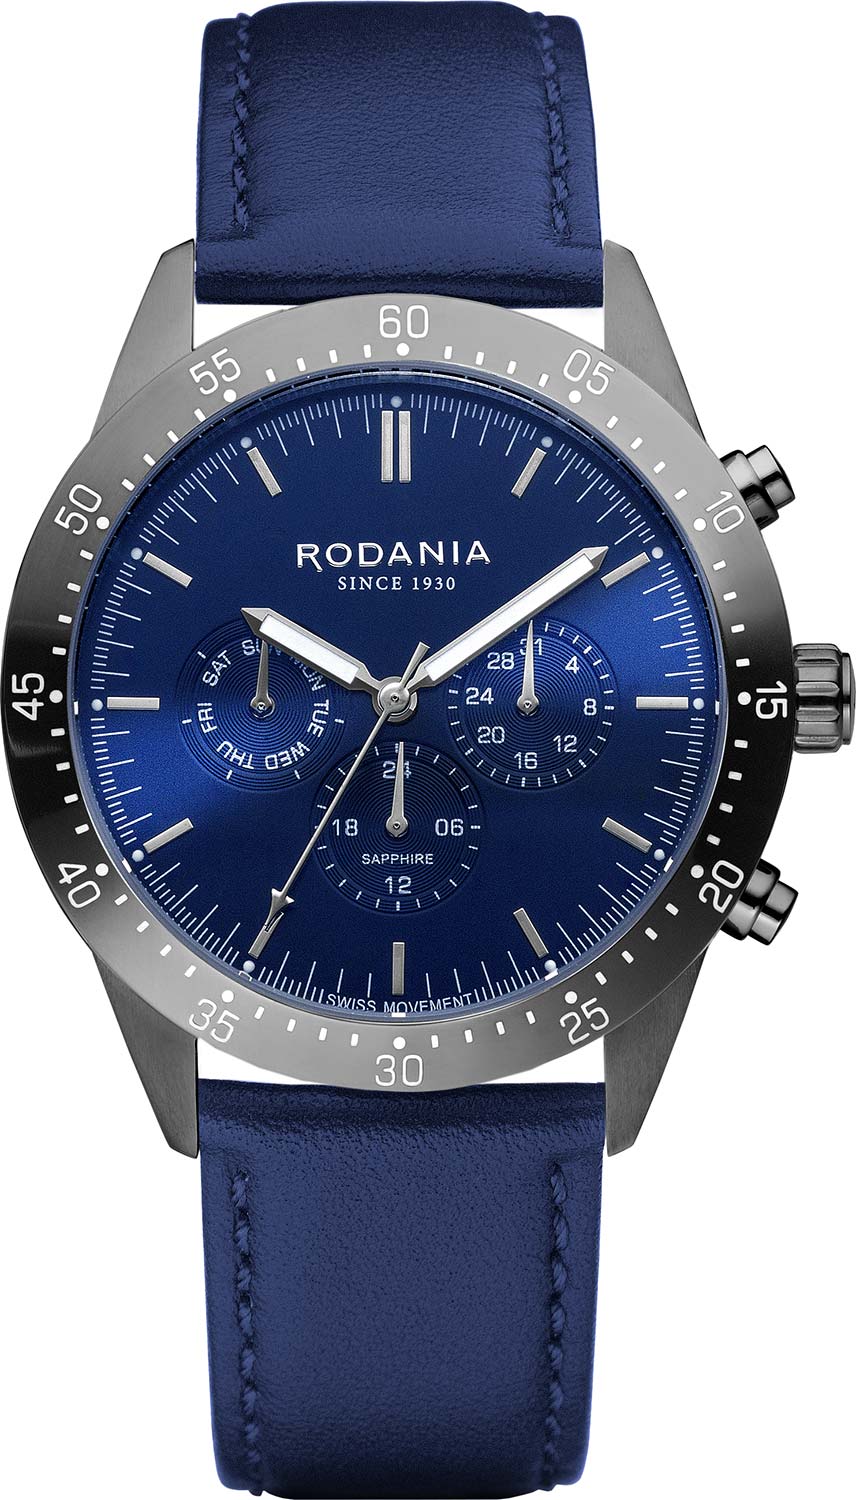 Наручные часы мужские RODANIA R20006 синие